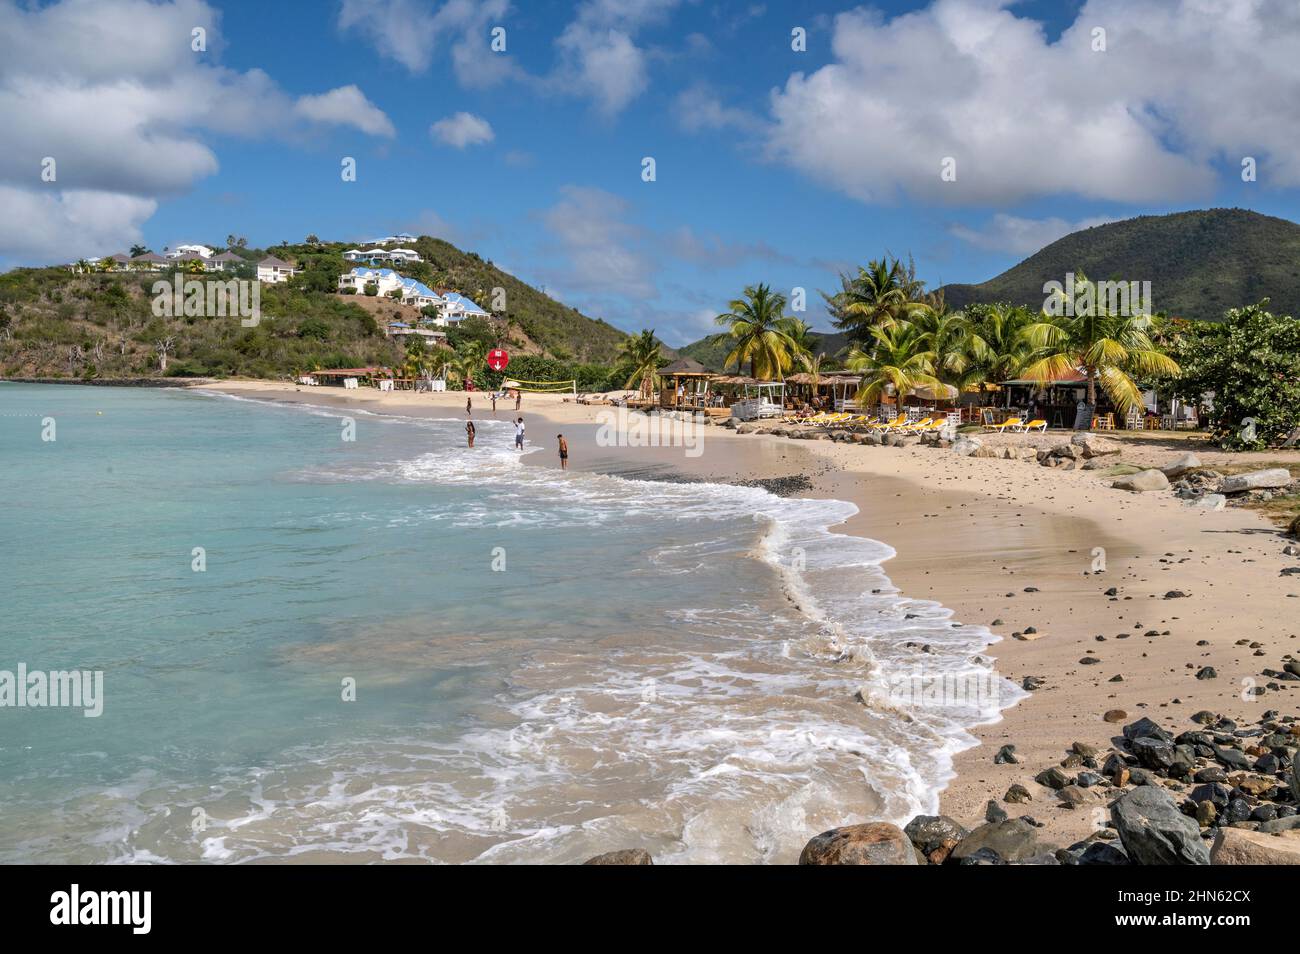 La baia e la spiaggia di Friar's Beach sull'isola caraibica di Saint-Martin / Sint Maarten Foto Stock